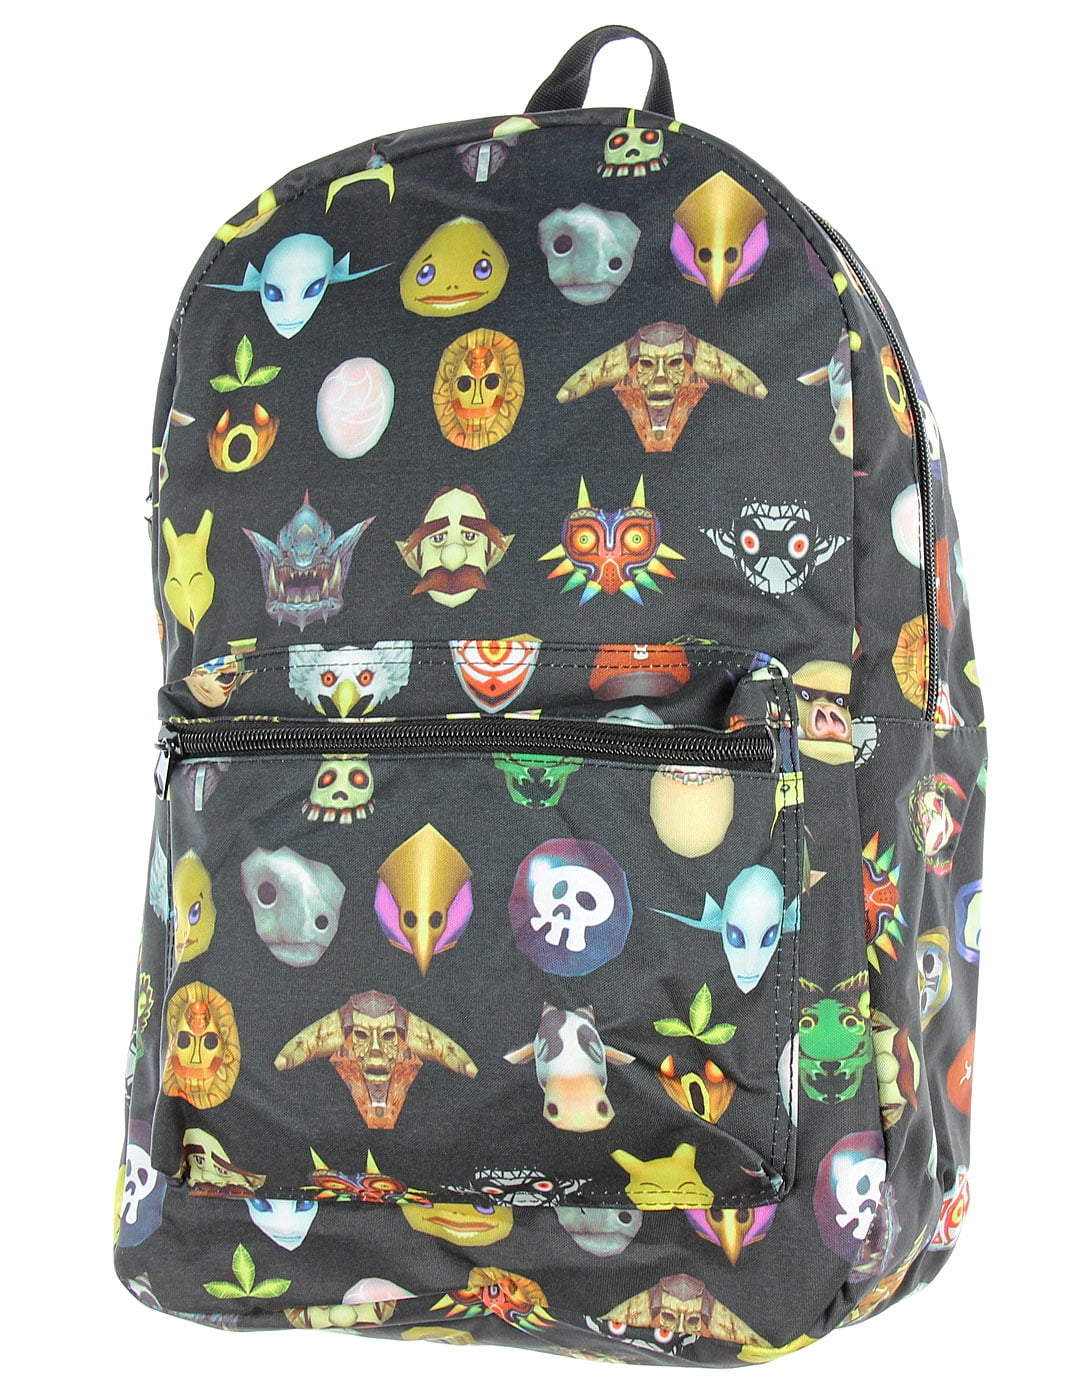 The Legend of Zelda 17" shoulder bag backpack unisex school bags mix fashion hot 